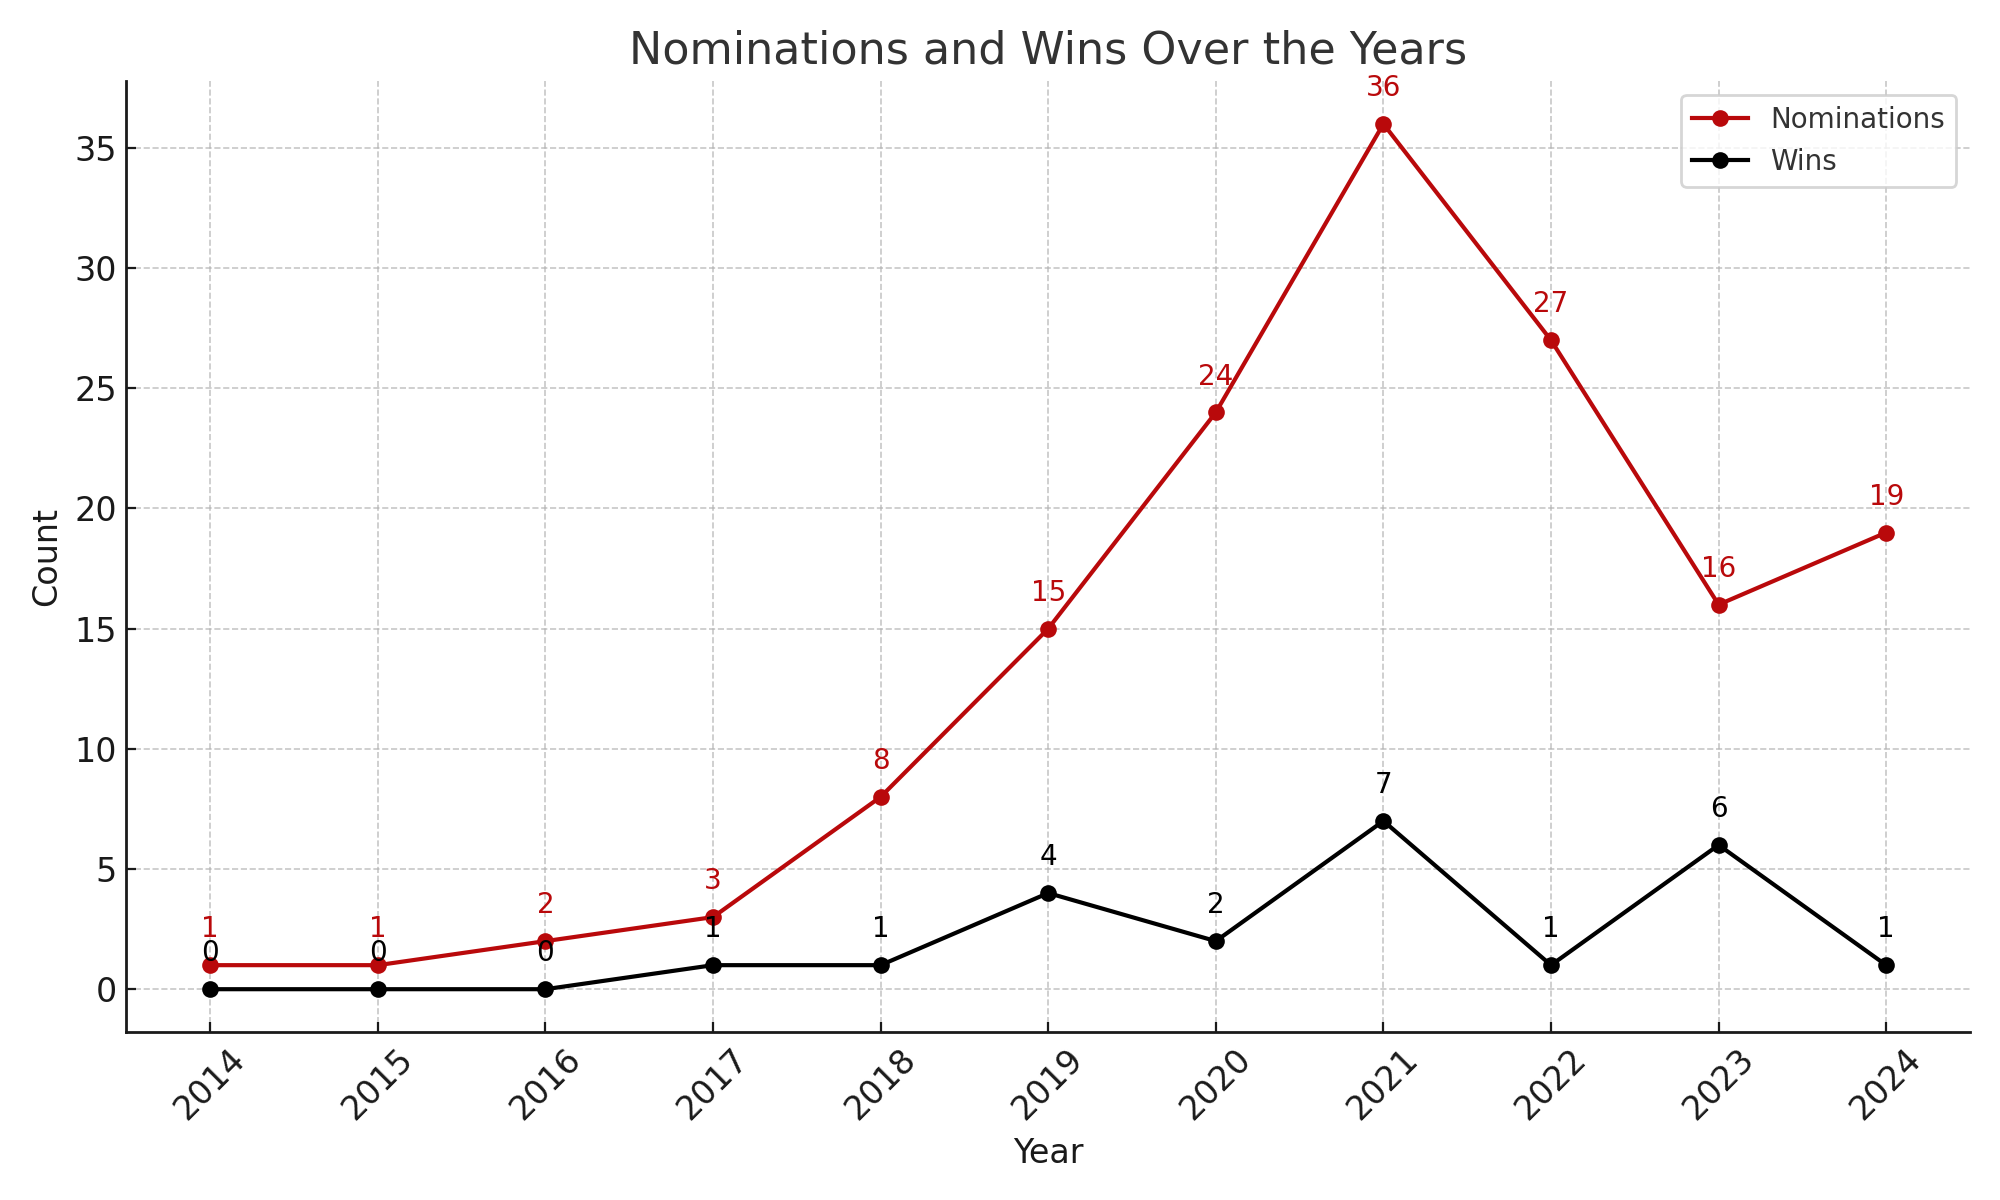 Final do gráfico de nomeações e vitórias